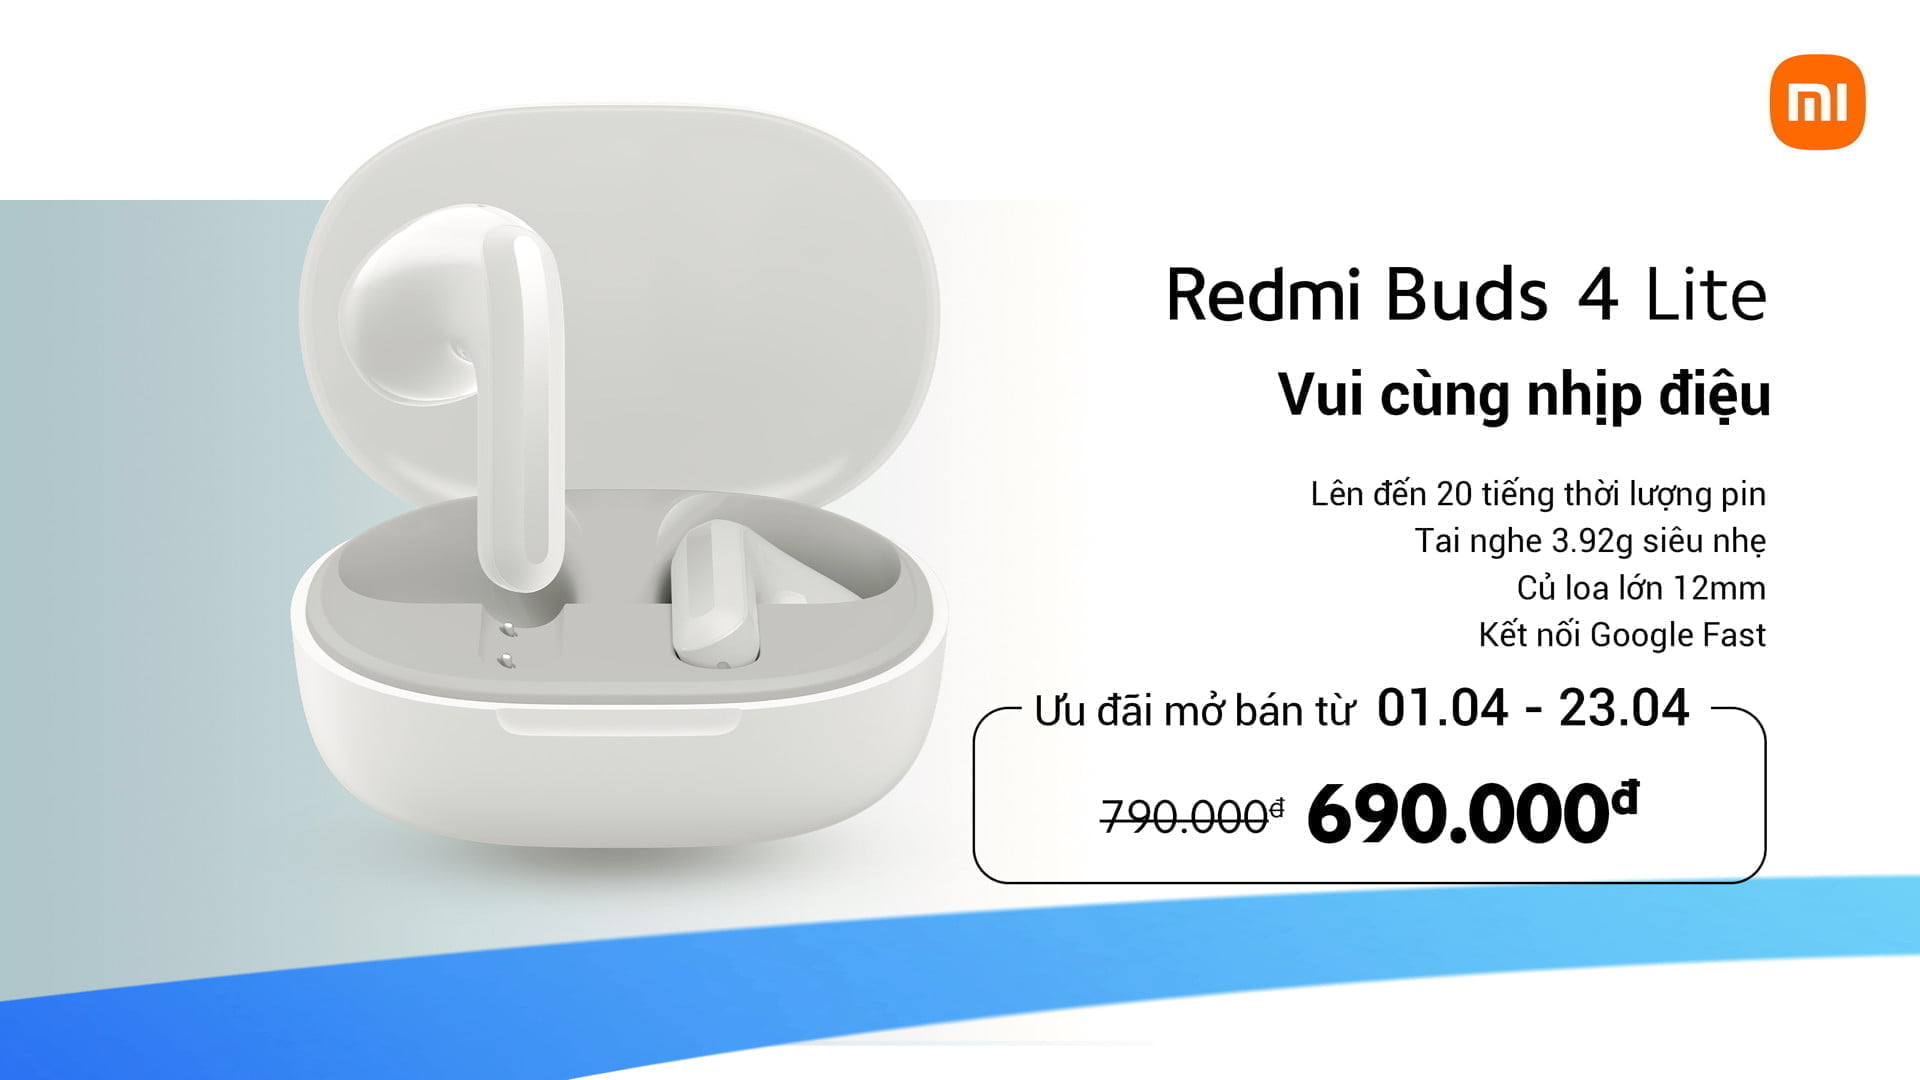 Redmi Buds 4 Lite Hinh 0 MMOSITE - Thông tin công nghệ, review, thủ thuật PC, gaming